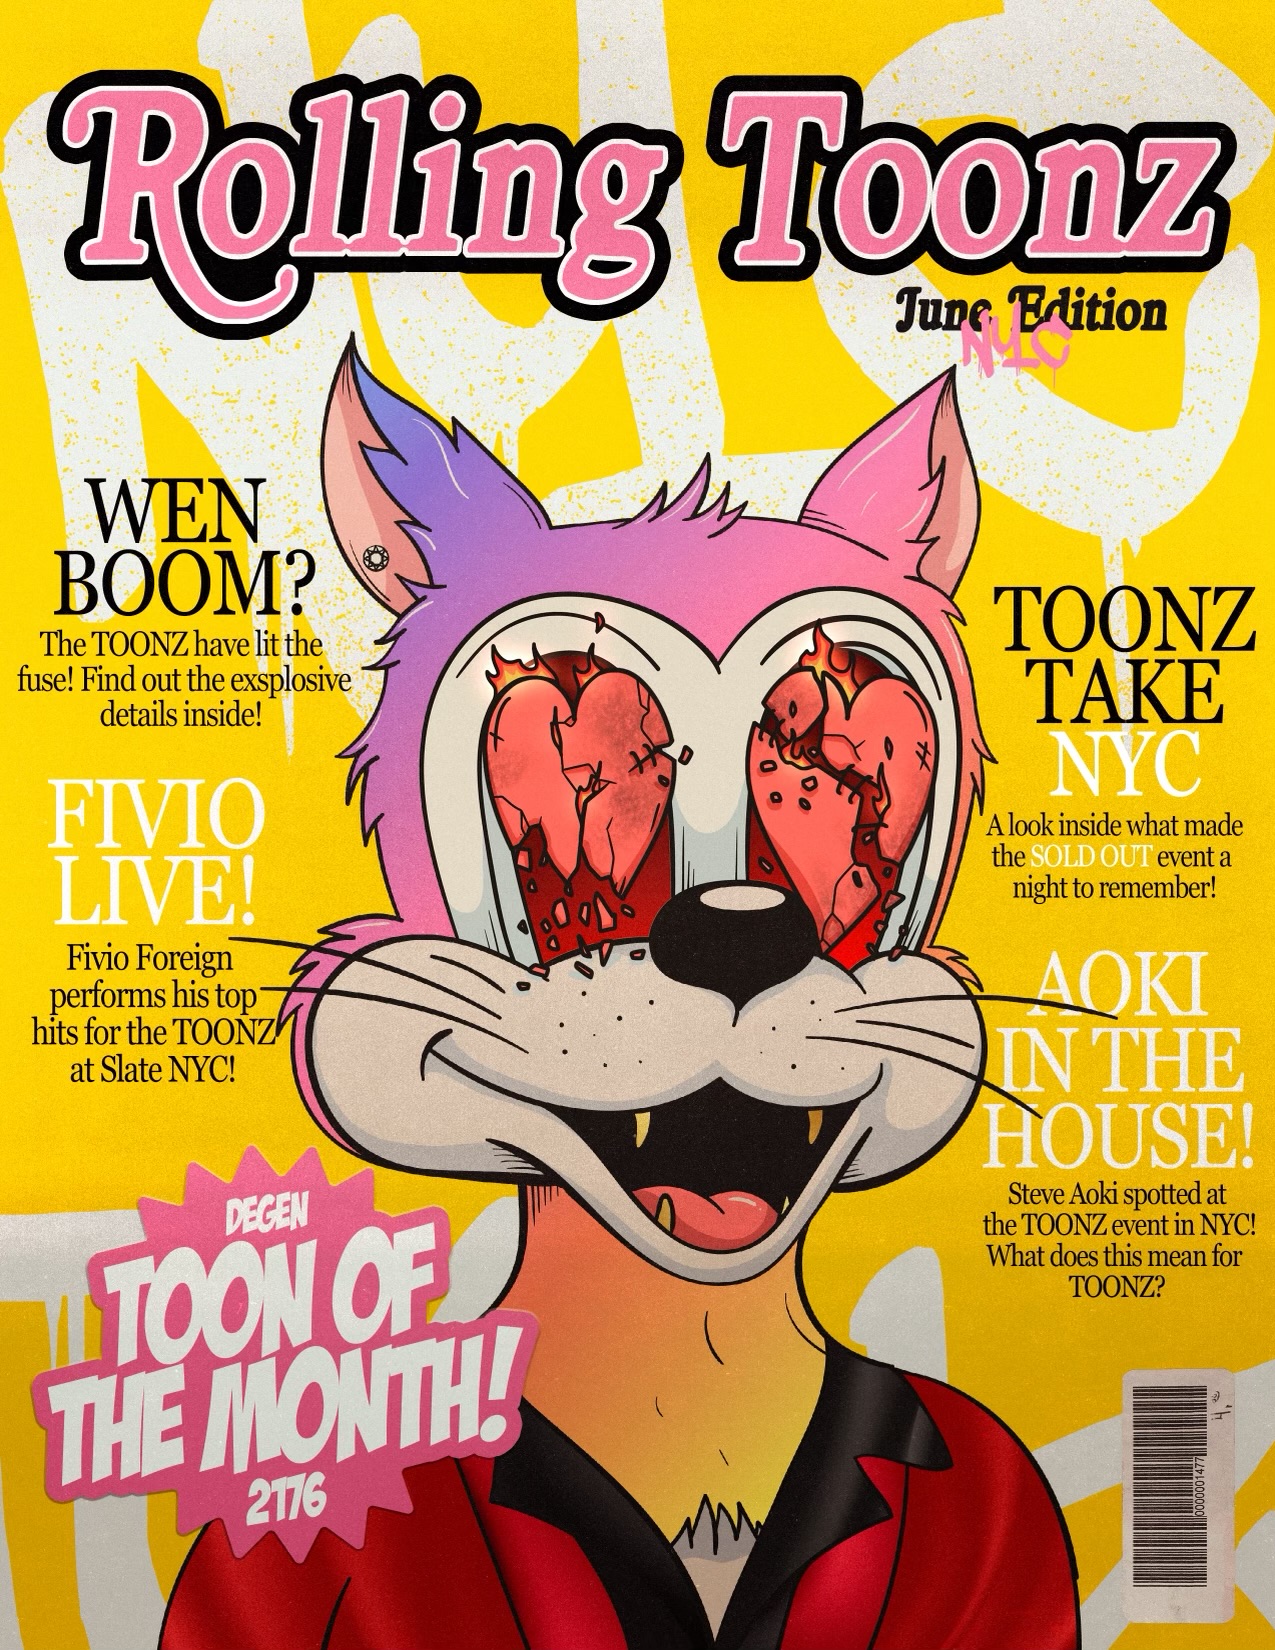 Rolling Toonz - June Edition